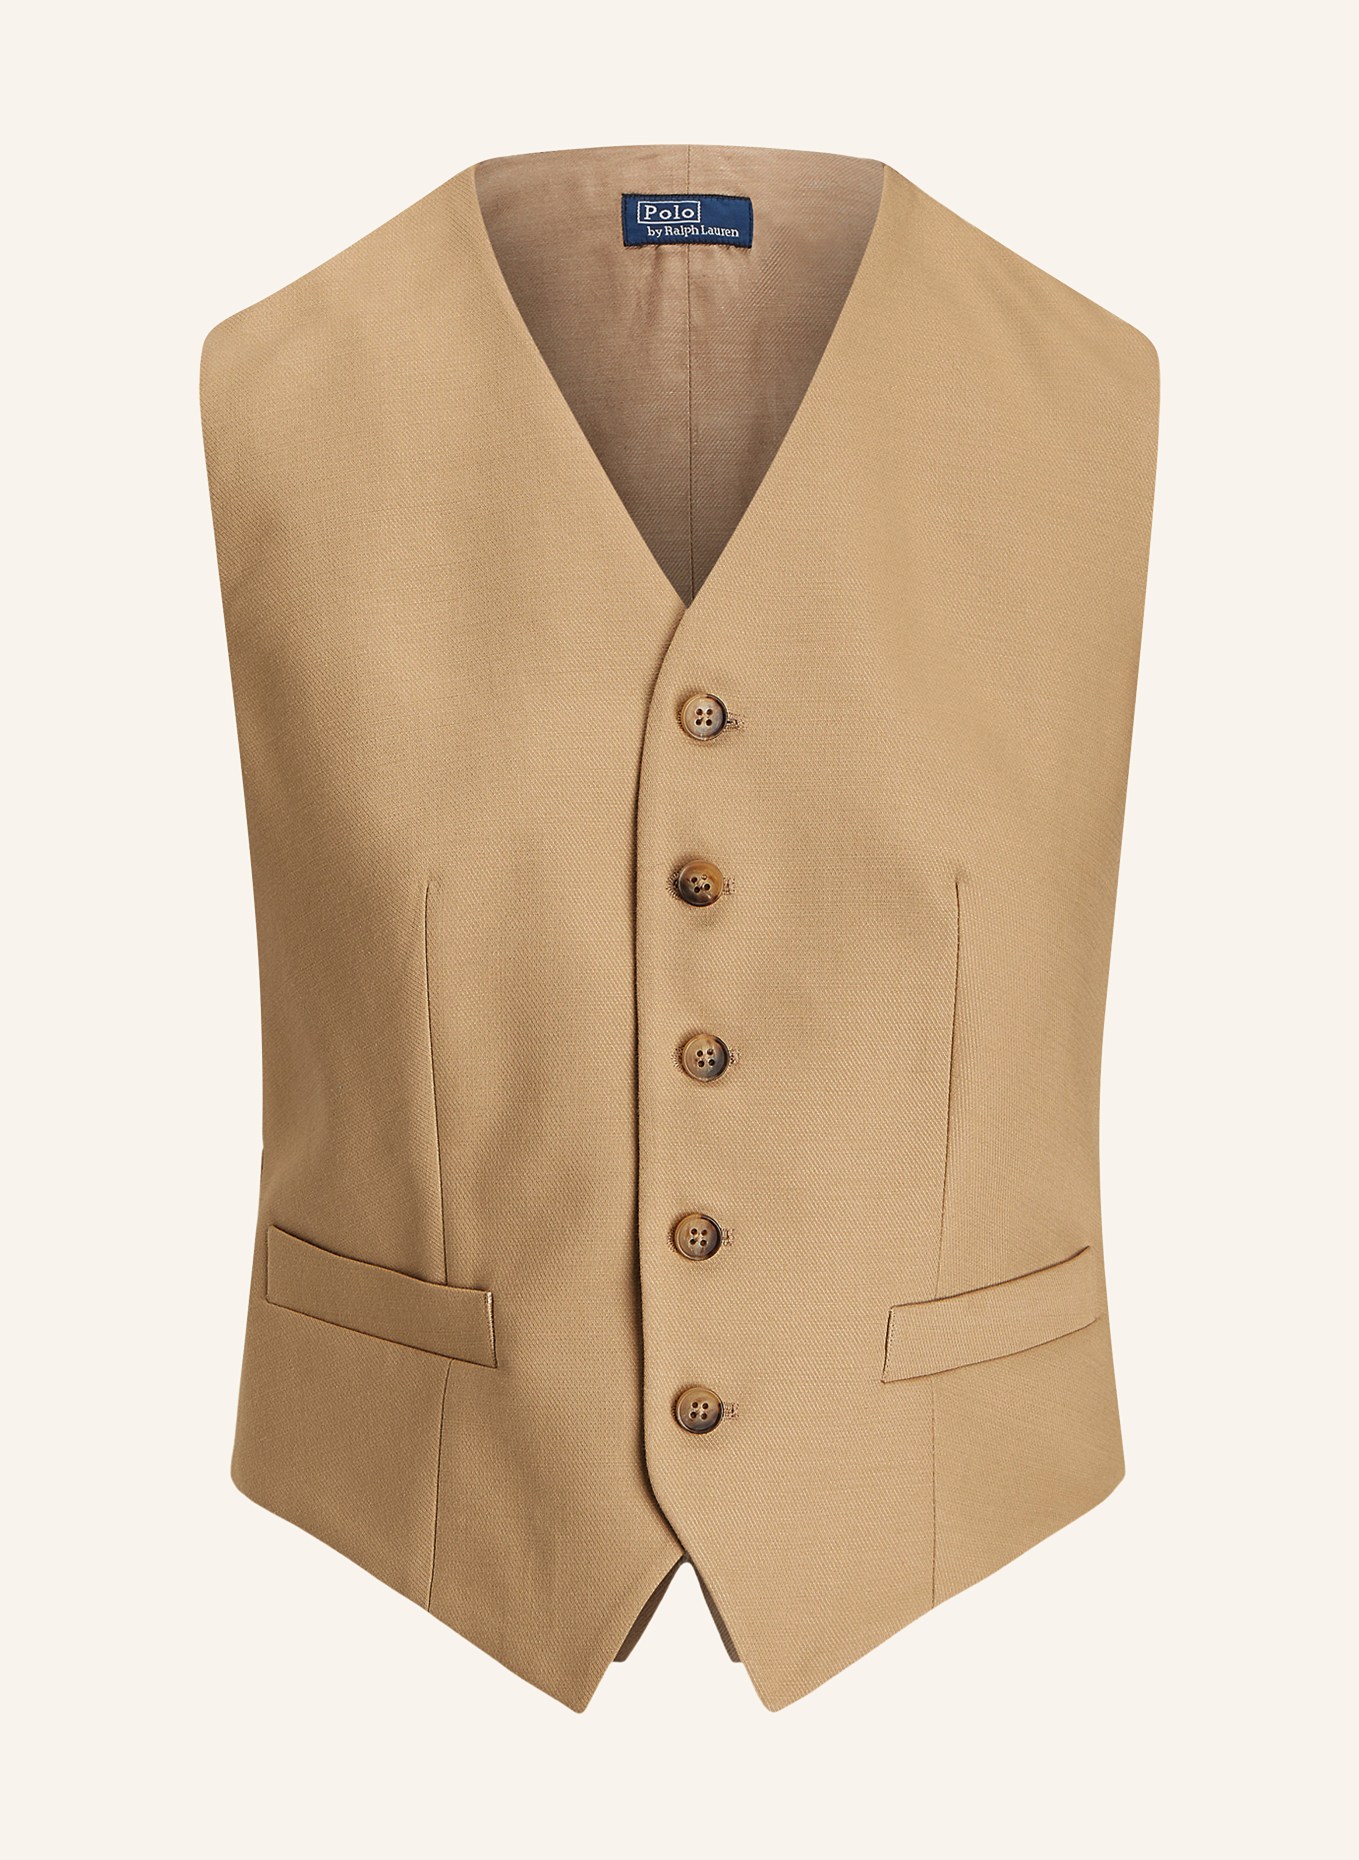 POLO RALPH LAUREN Blazer vest, Color: LIGHT BROWN (Image 1)